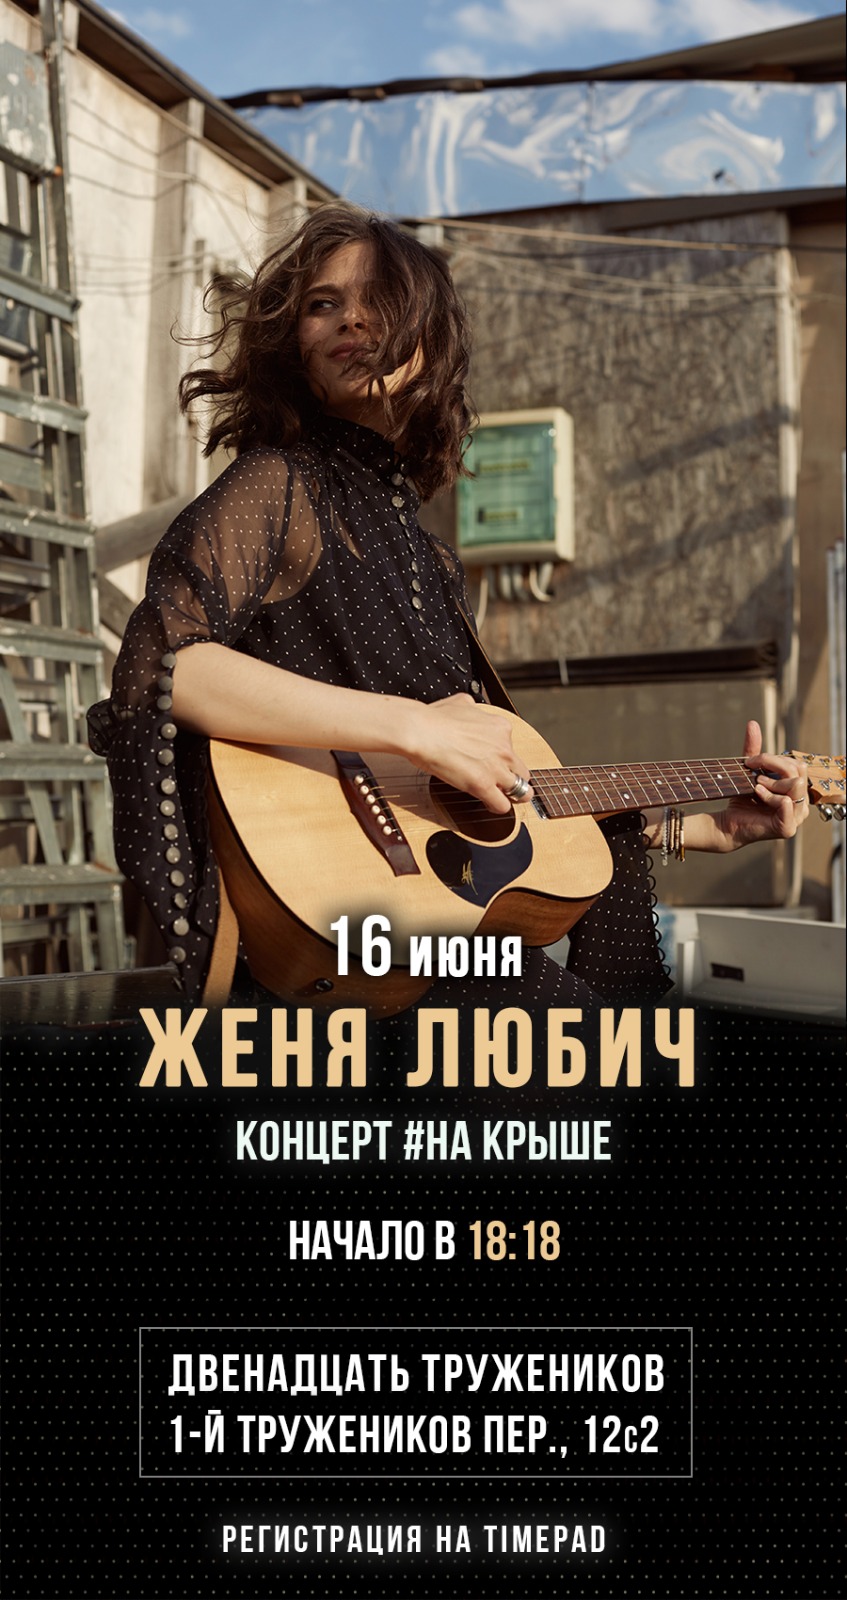 Концерт Жени Любич на крыше "12 тружеников" (Москва)